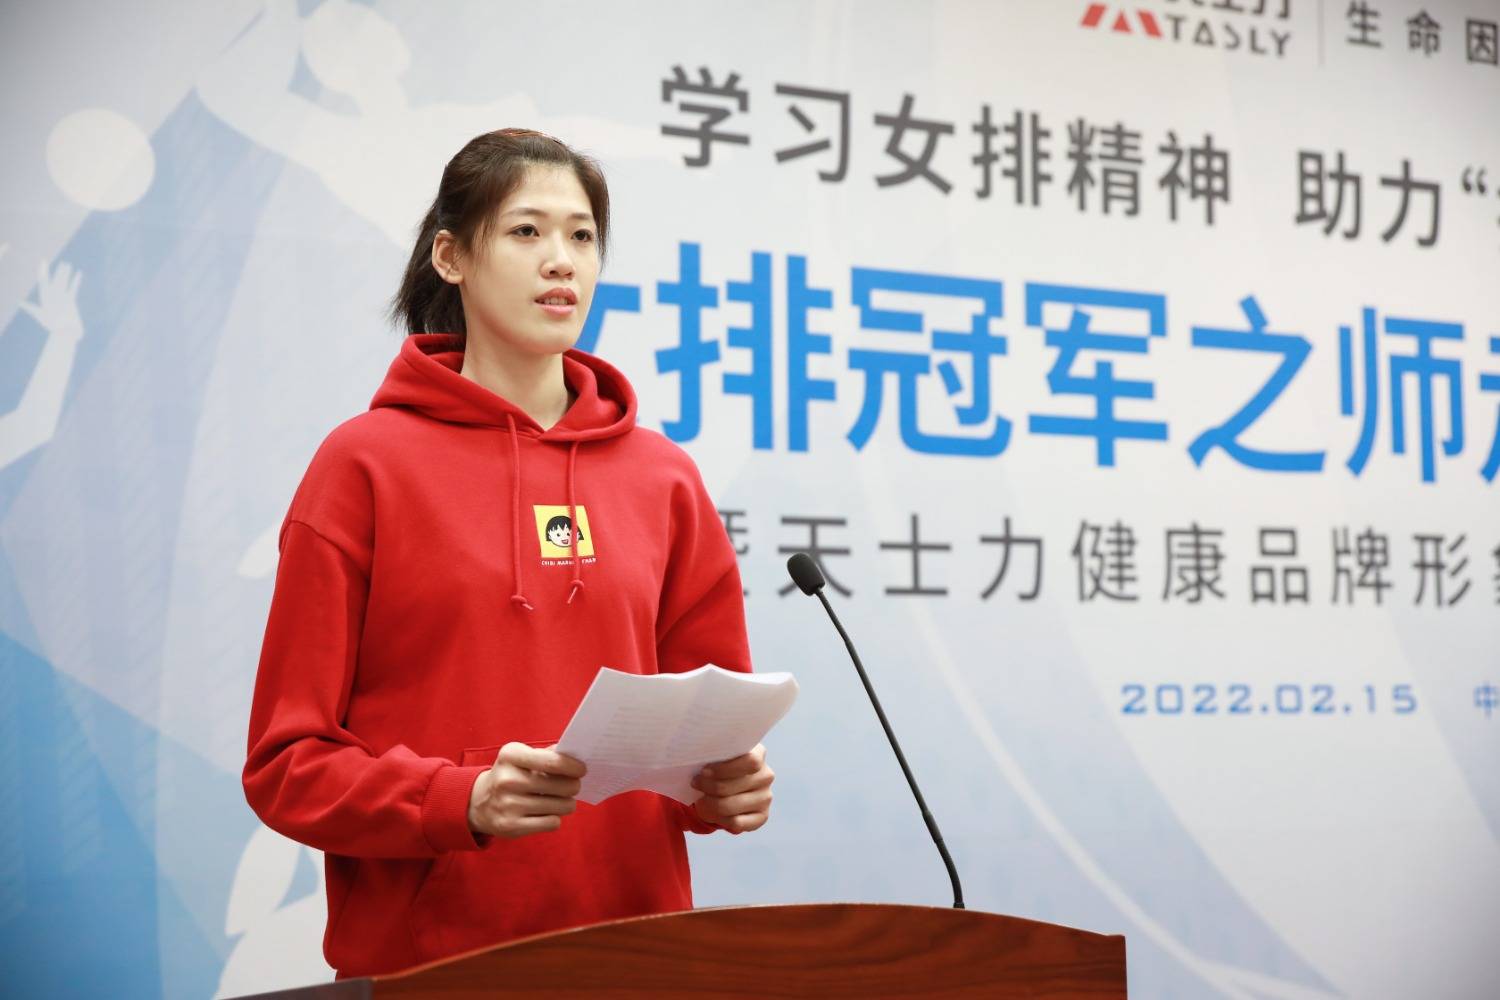 原创             明年奥运会中国女排主攻竞争很激烈 吴梦洁可能会成为最美逆行者